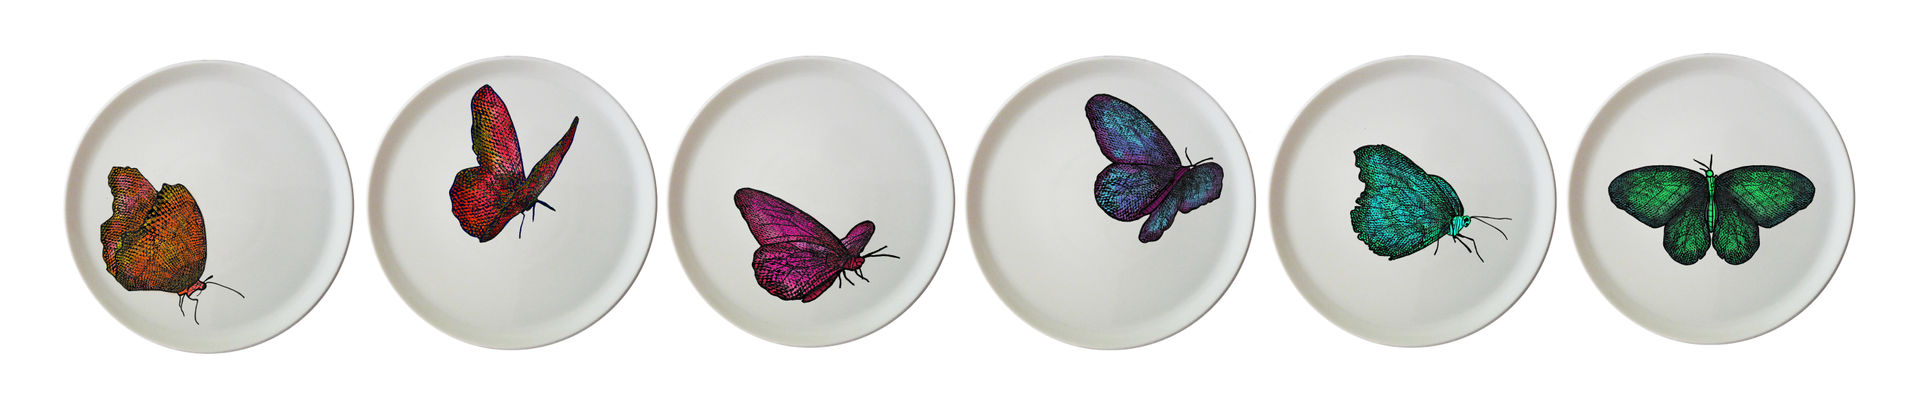 Butterflies, Anne Wodrascka Anne Wodrascka Comedores de estilo ecléctico Vasos y vajilla